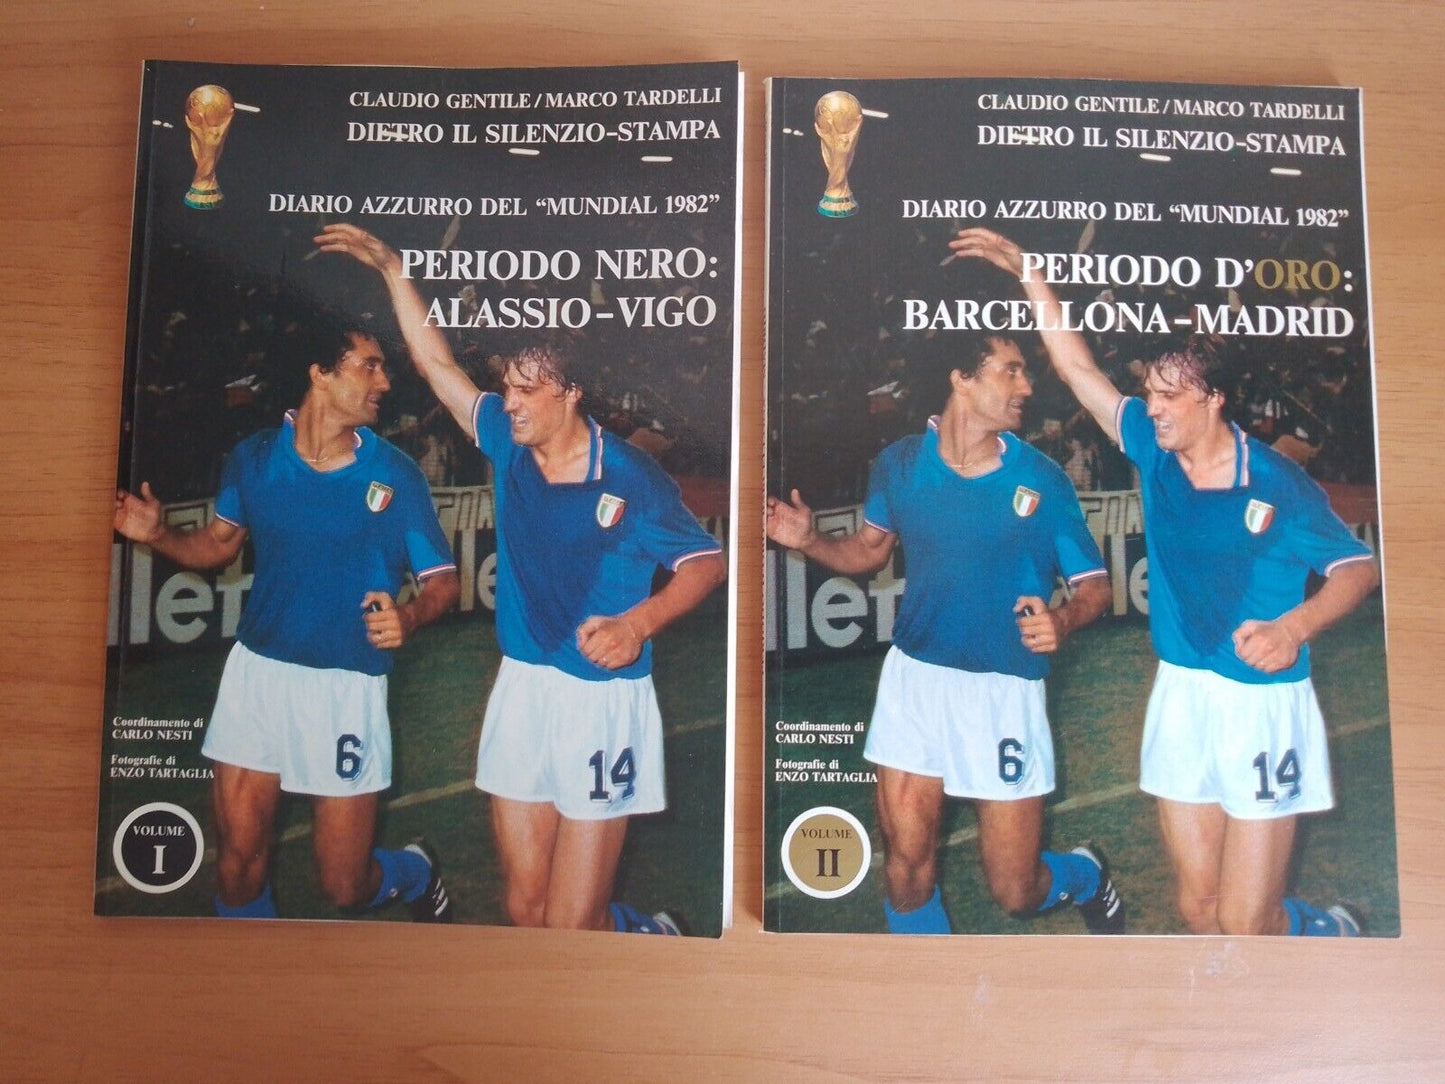 Diario azzurro del "Mundial 1982" - Gentile/ Tardelli Vol.1-2